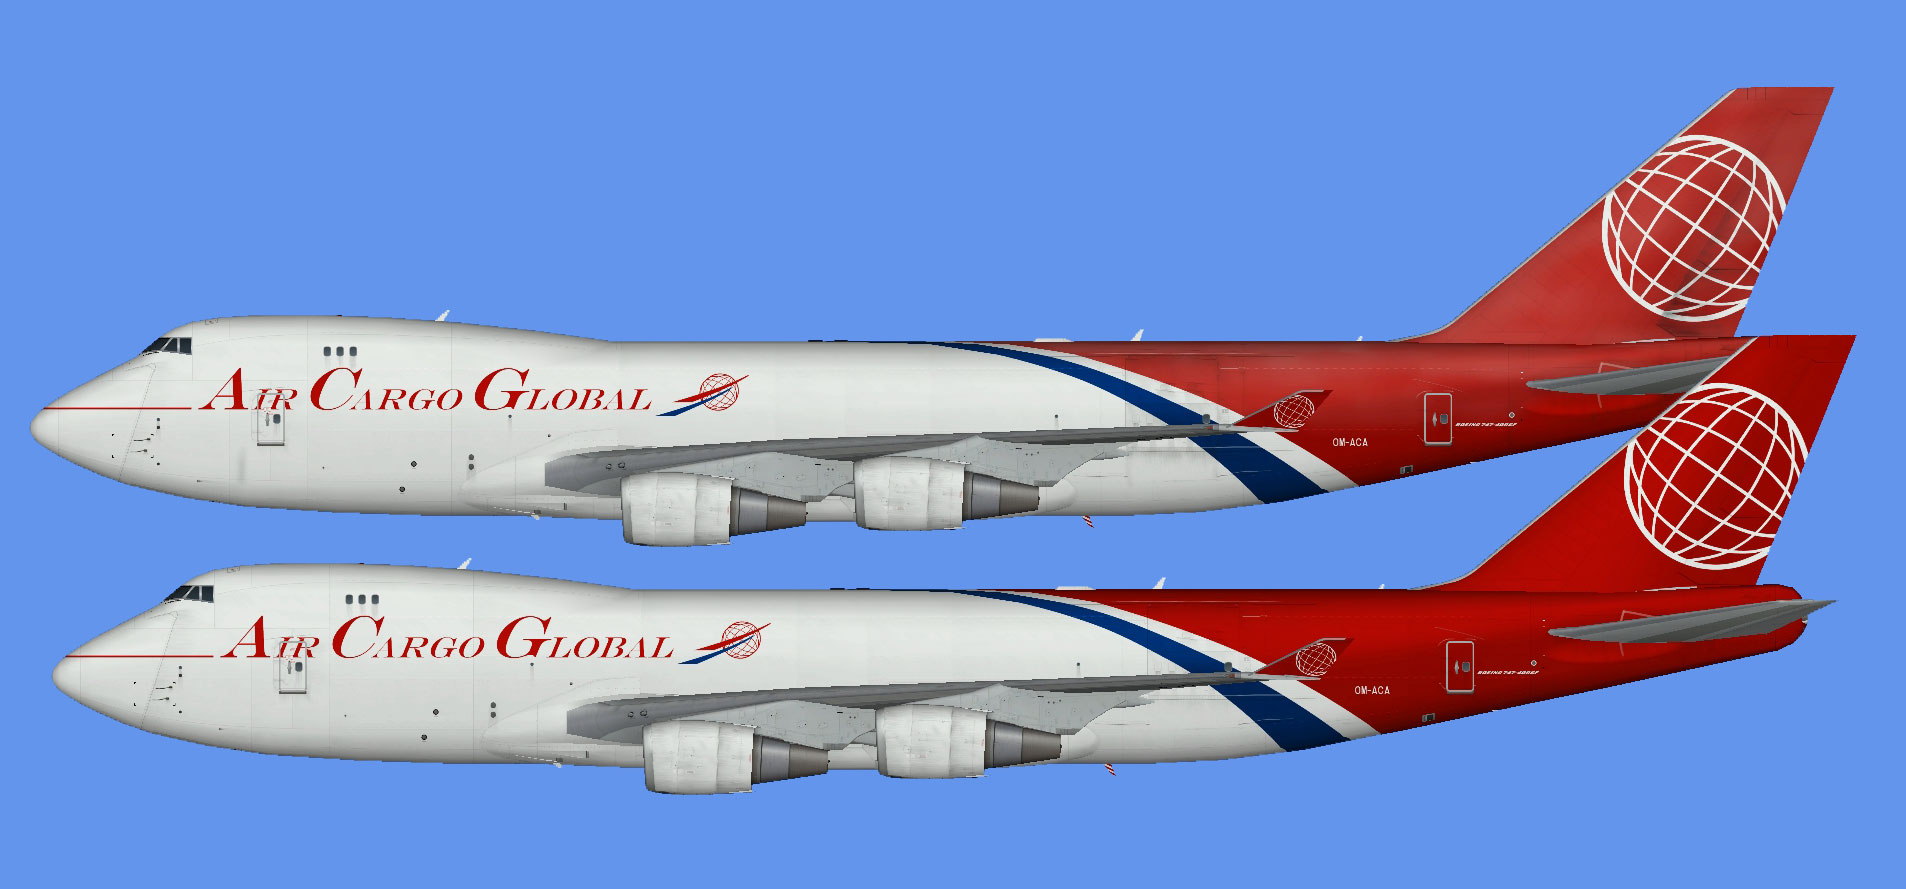 Air Cargo Global Boeing 747-400F (GE)